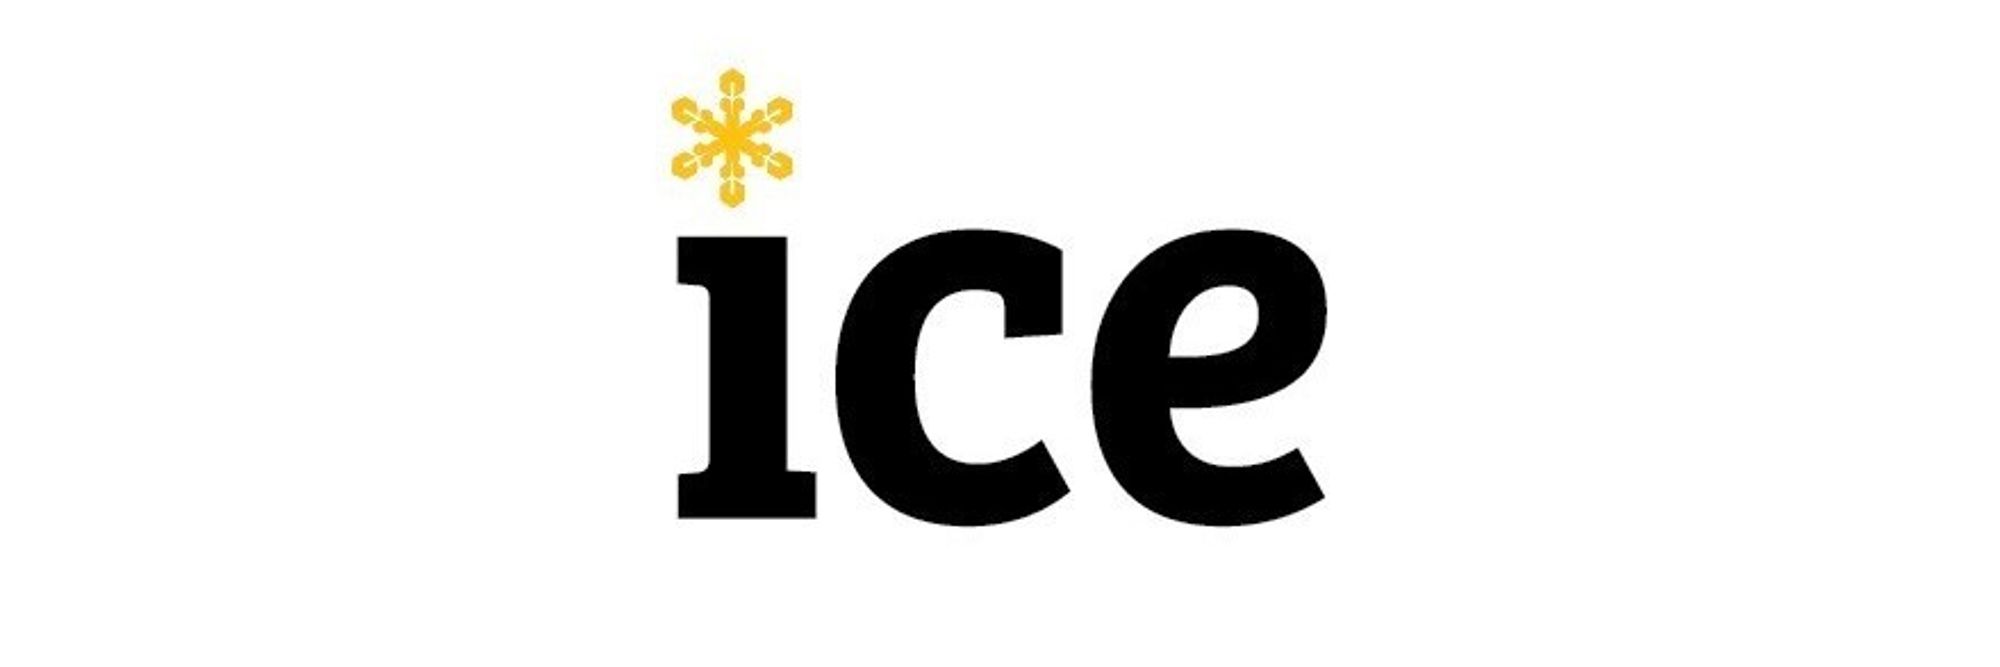 Slik ser den nye logoen til Ice ut, når selskapet kutter .net-endelsen på nyåret.